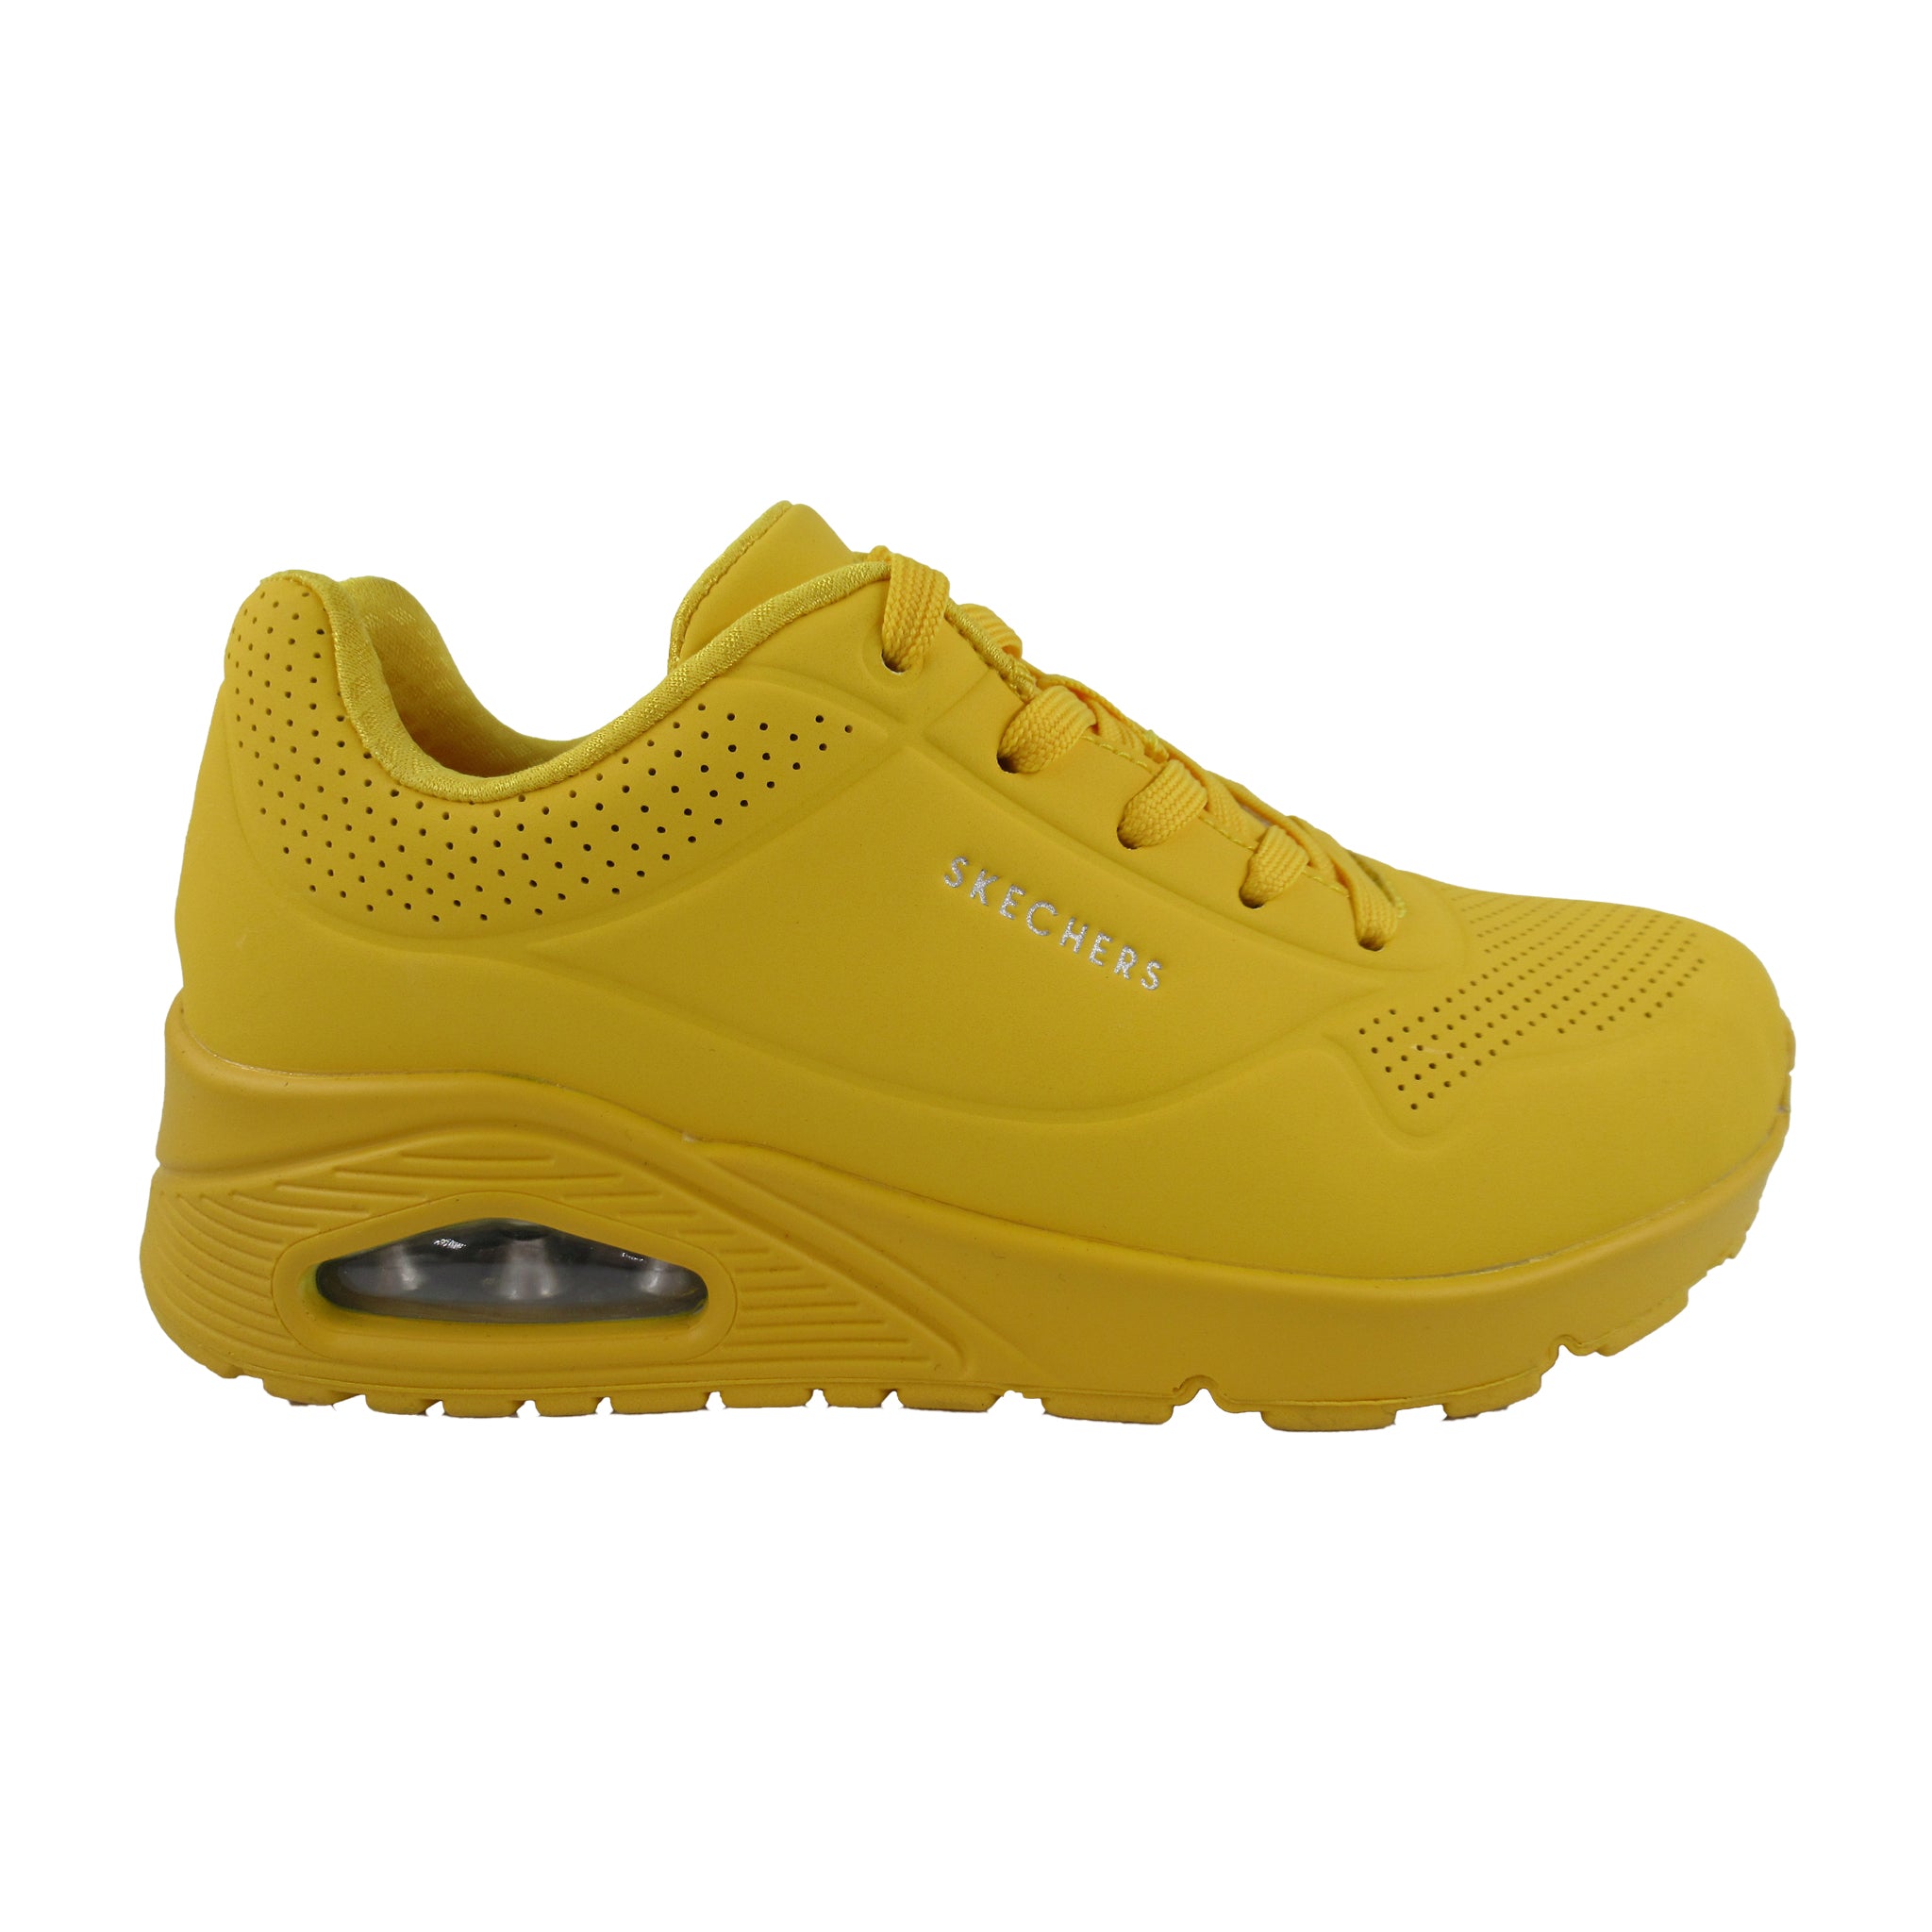 skechers sandals womens yellow